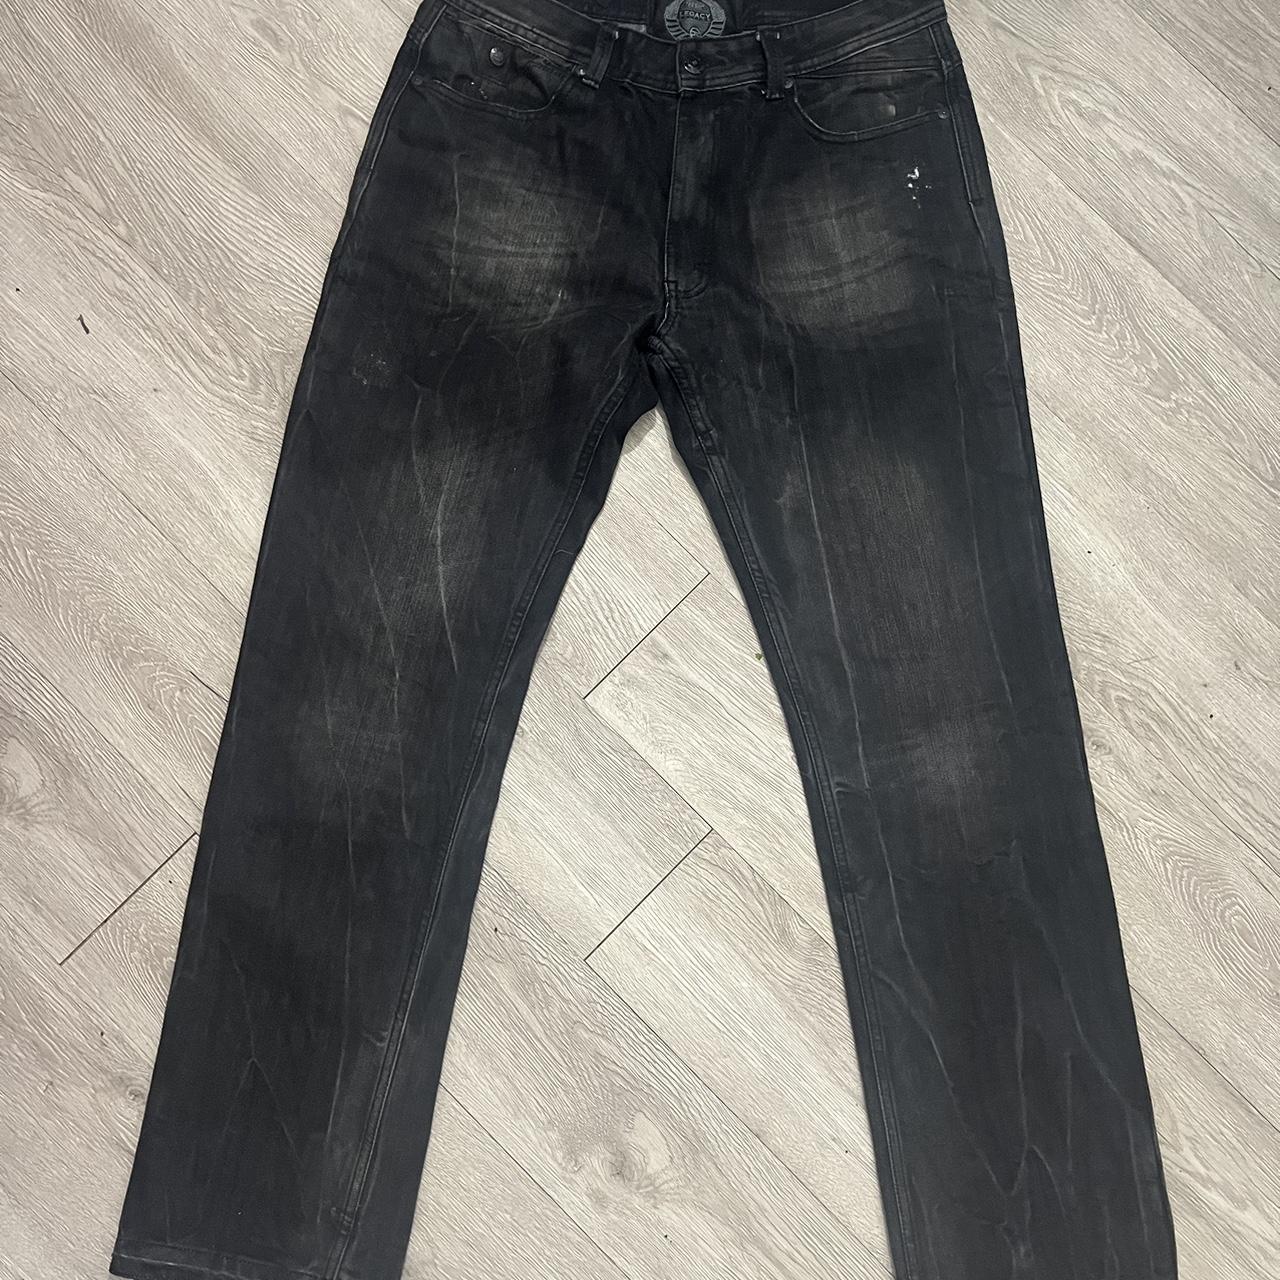 Legacy Vintage Jeans - Unhemmed bottom for flares... - Depop